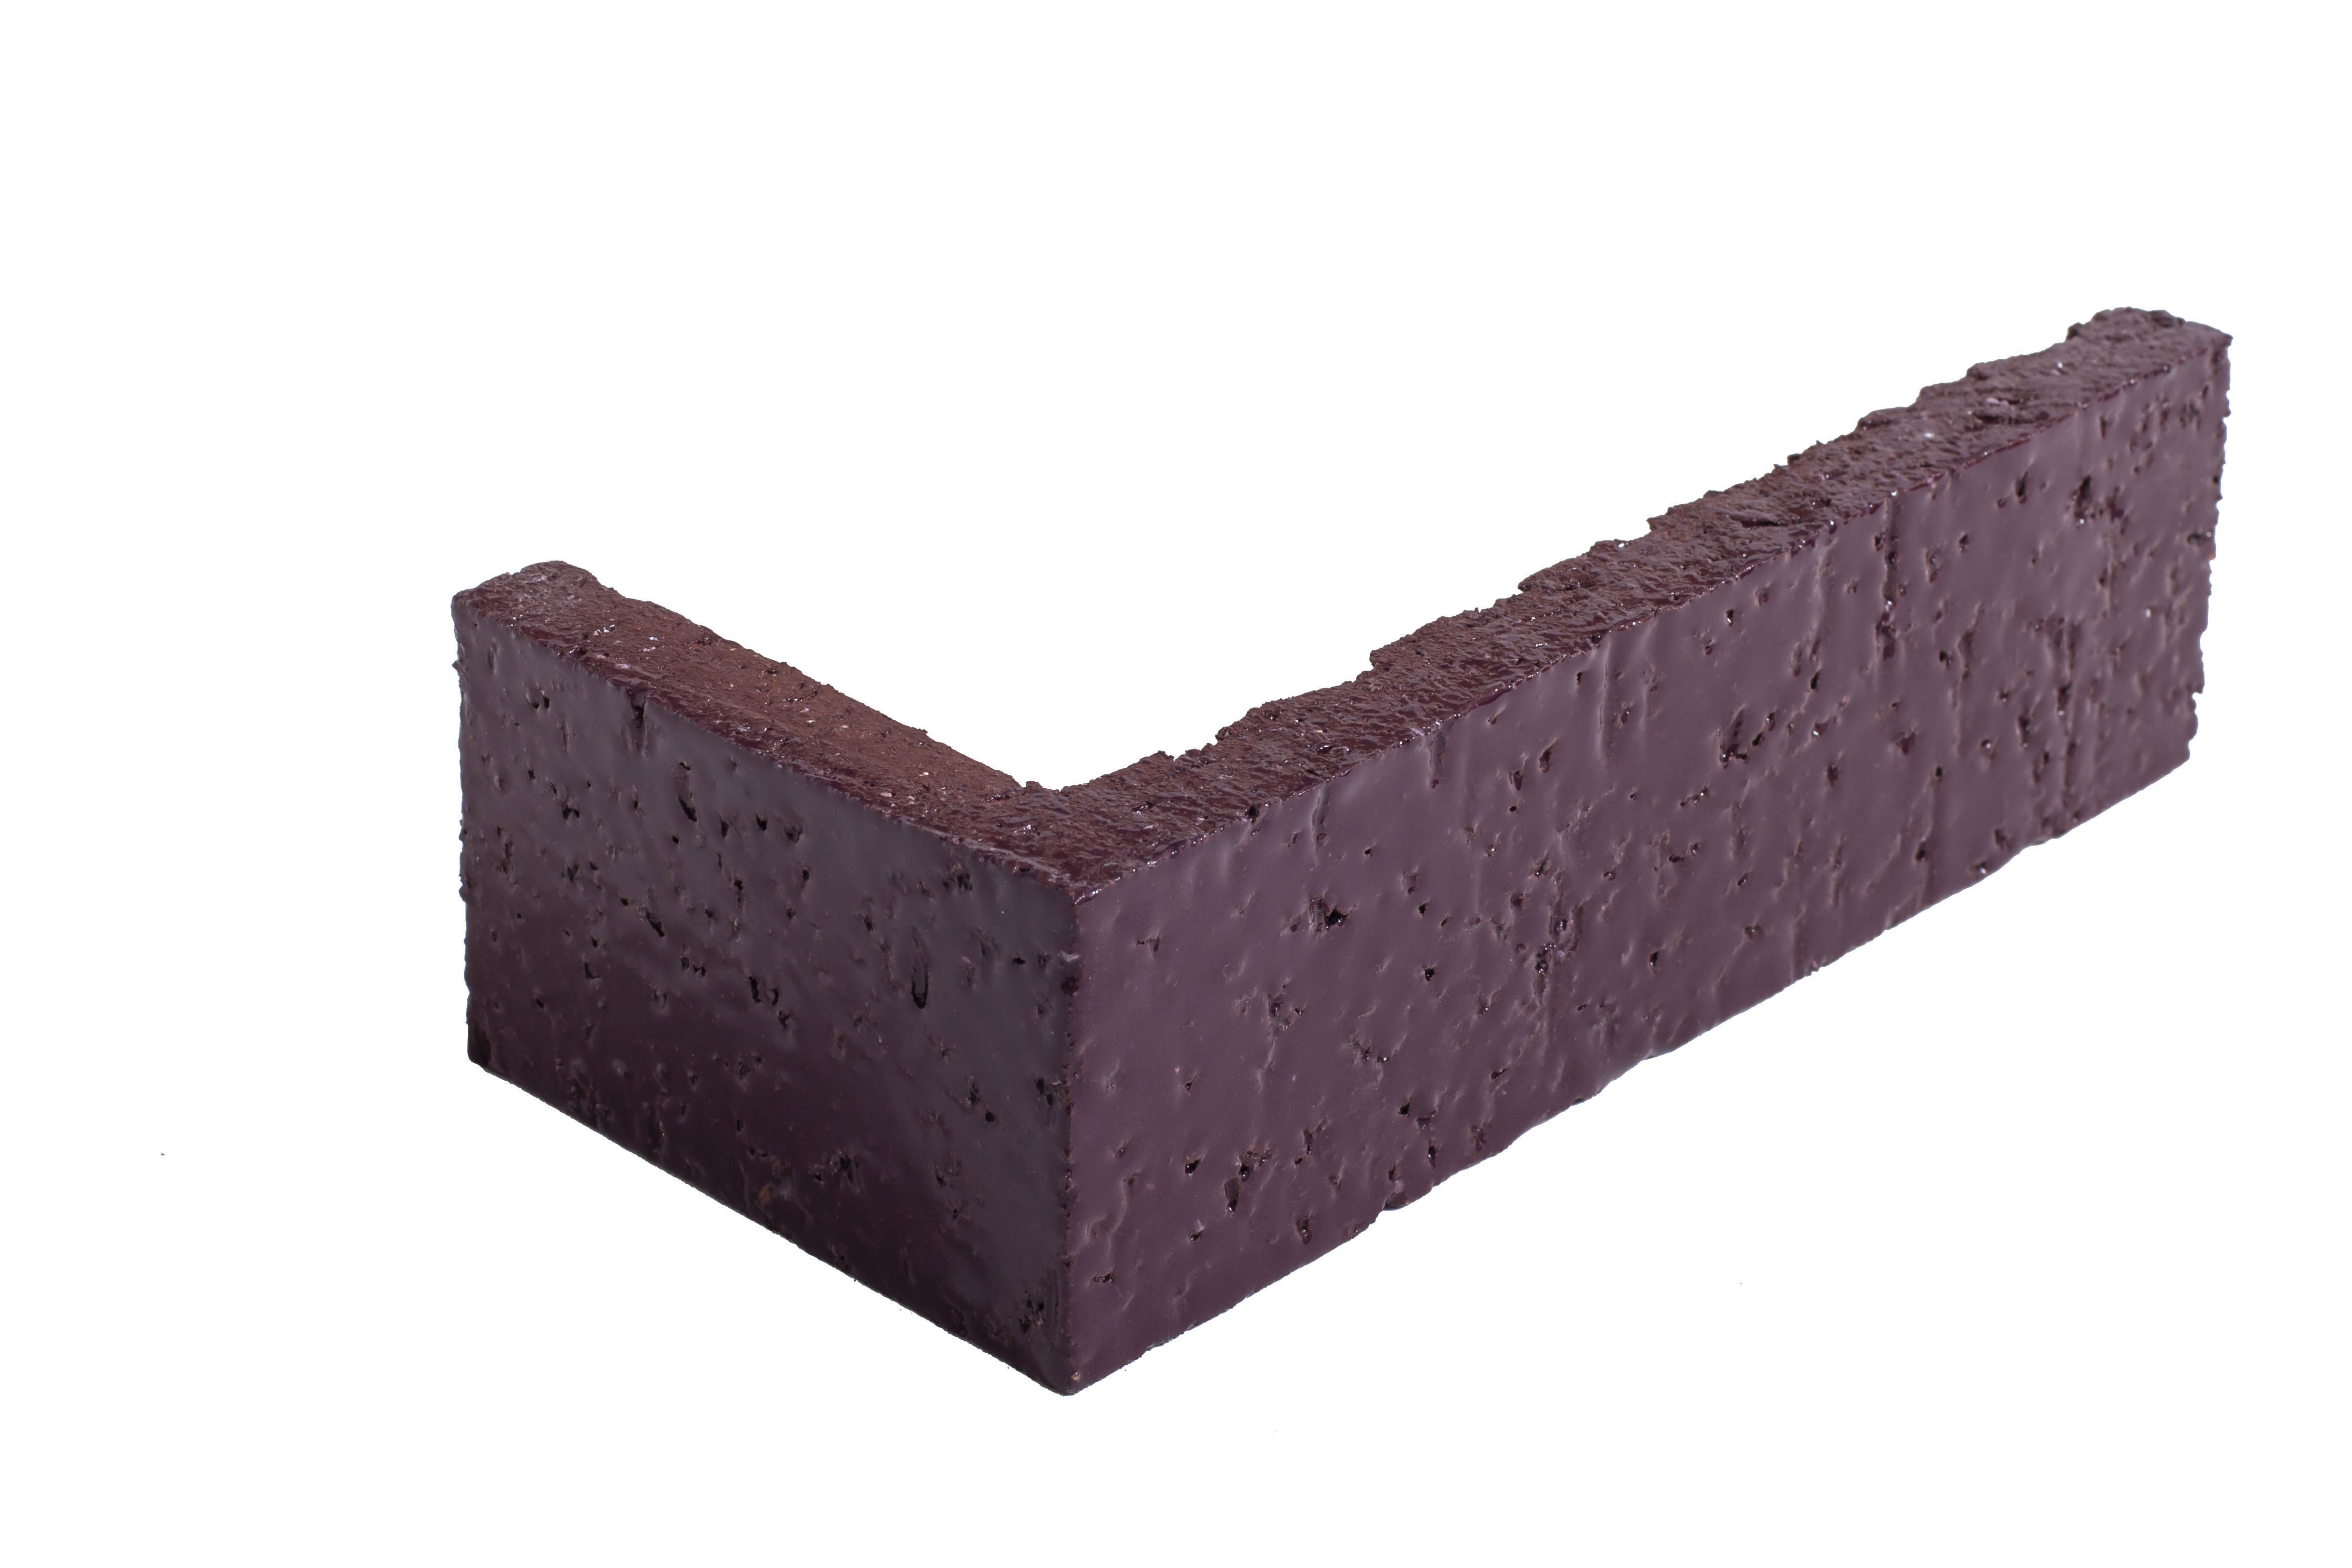 Arto Glazed Brick: Plum  (Corner 2¼"x7⅝"x⅝")